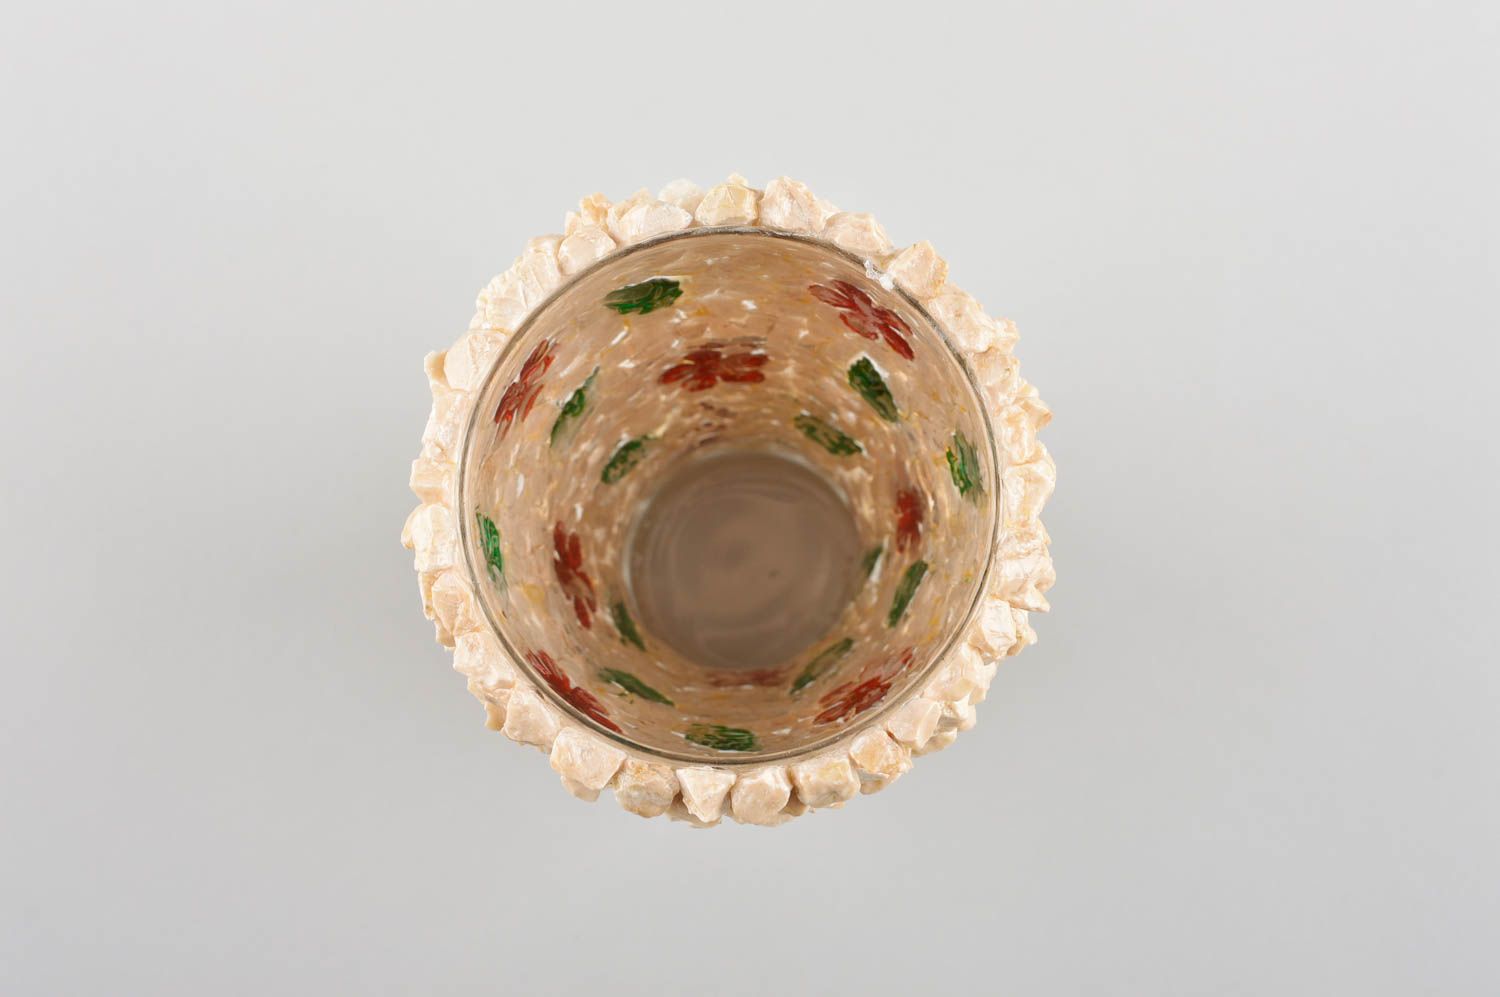 Handmade dishware beautiful glass with stones glass tumbler kitchen utensils  photo 4